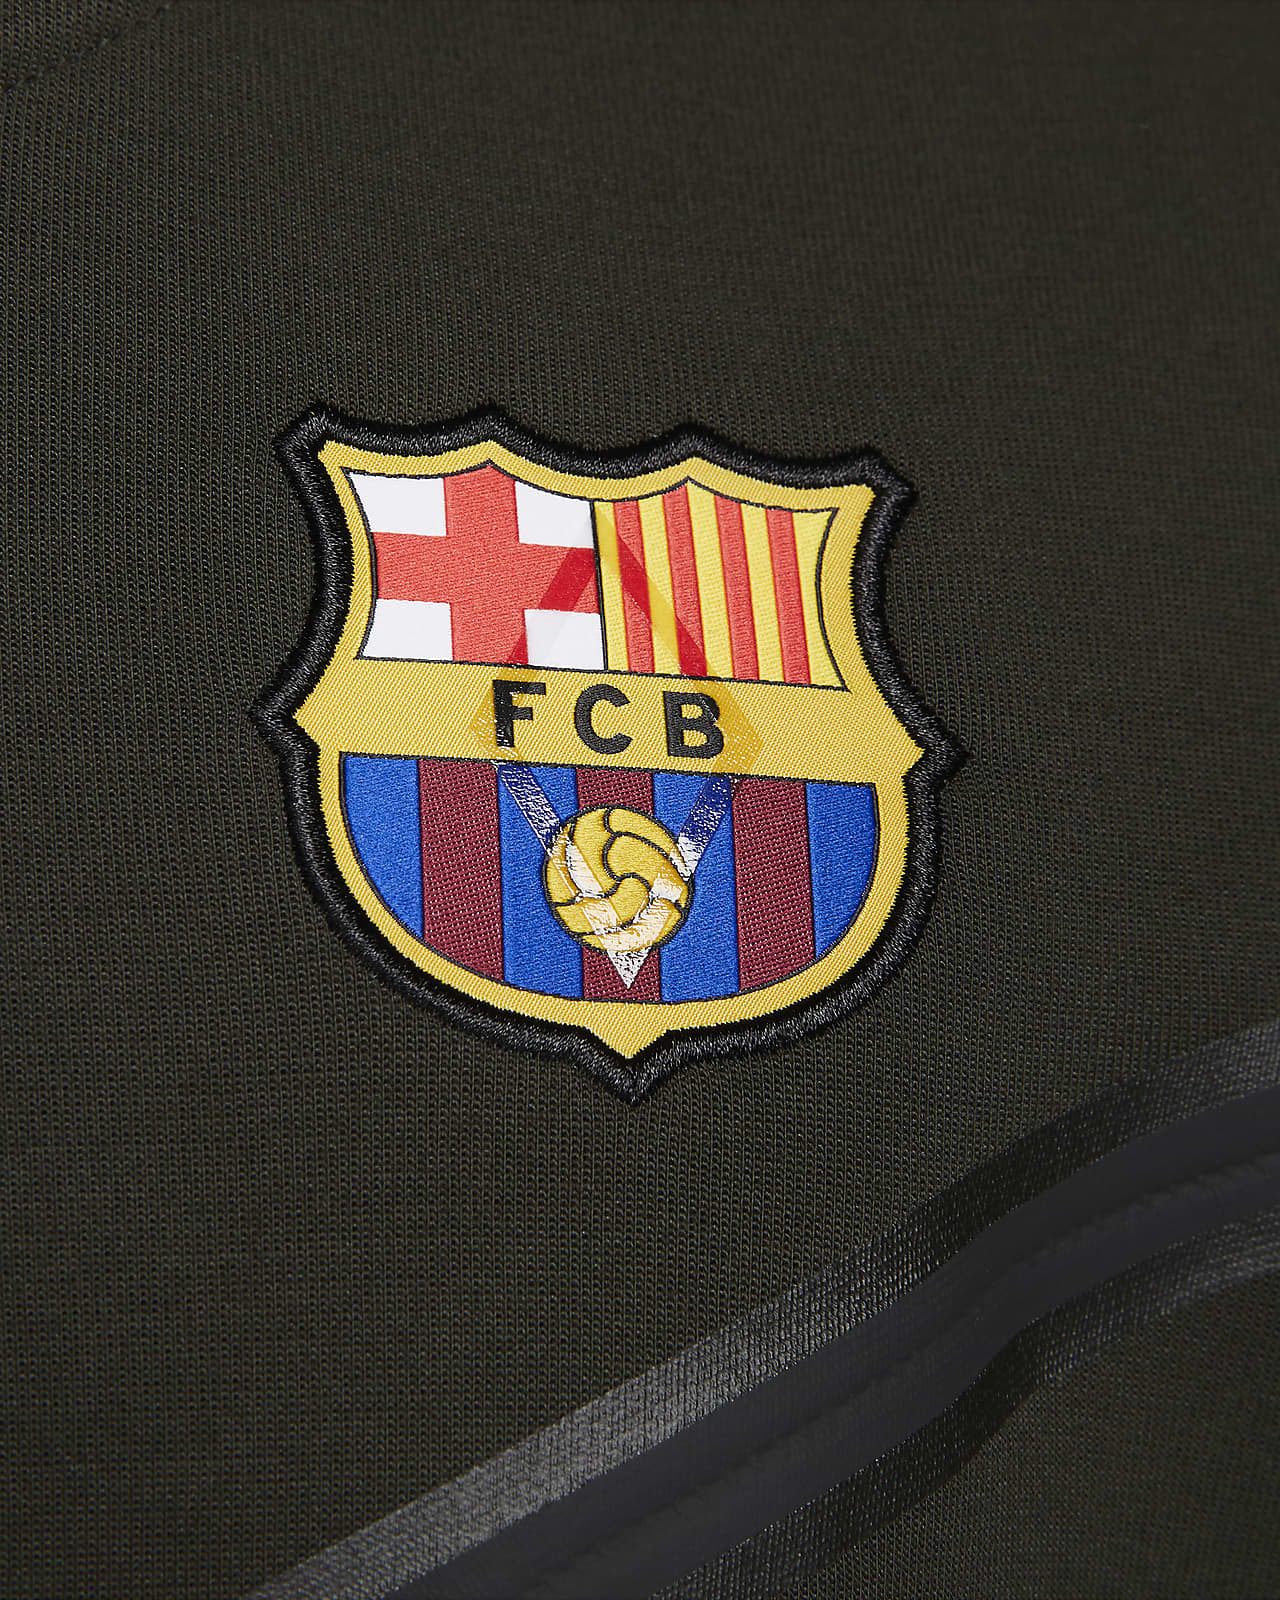 zaterdag Overdreven lus FC Barcelona Tech Fleece Windrunner Men's Nike Full-Zip Hoodie. Nike.com